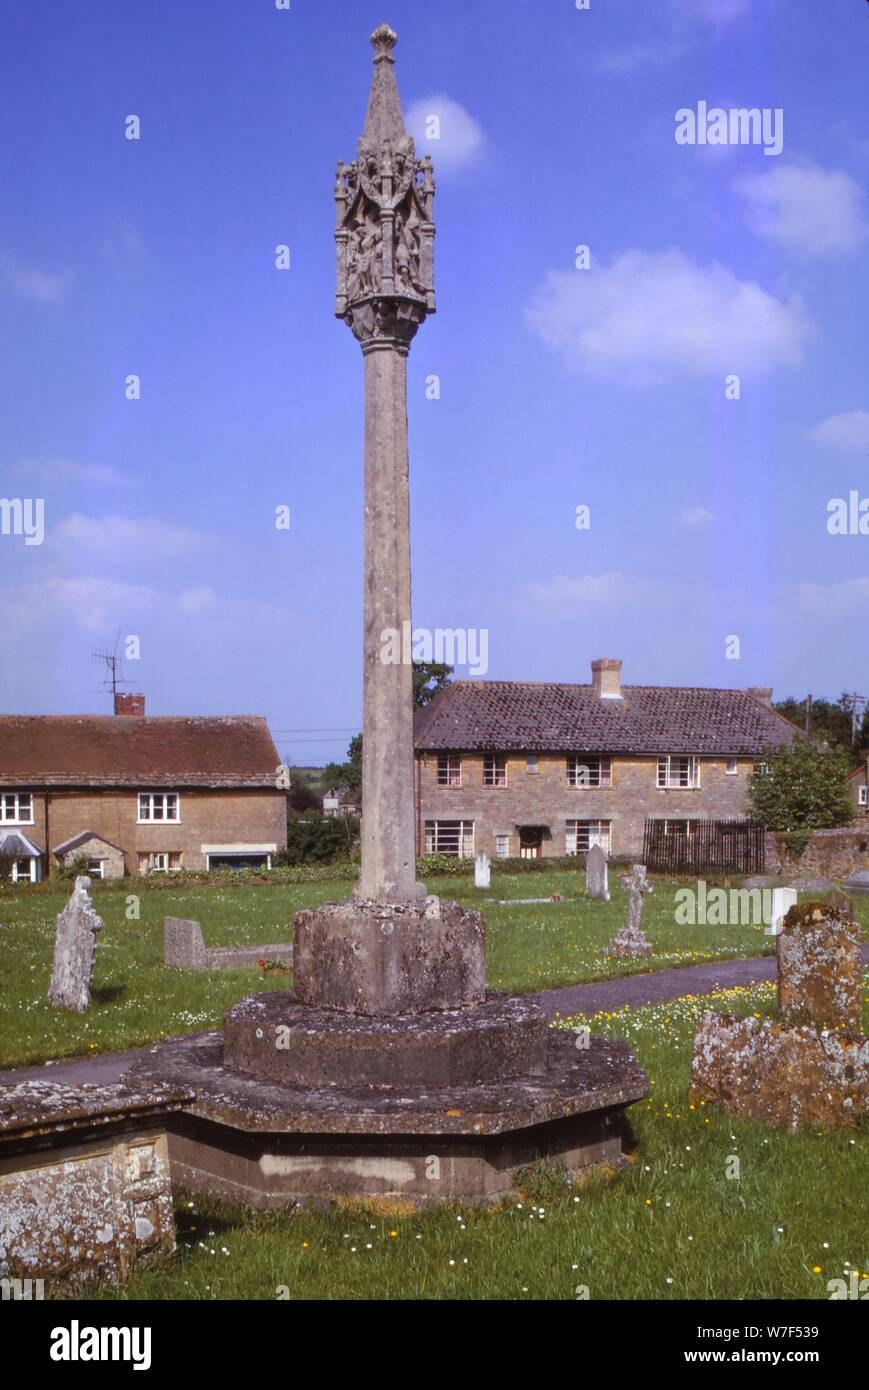 Monument aux morts dans le cimetière de Tintinhull, Somerset, 20e siècle. Artiste : Inconnu. Banque D'Images